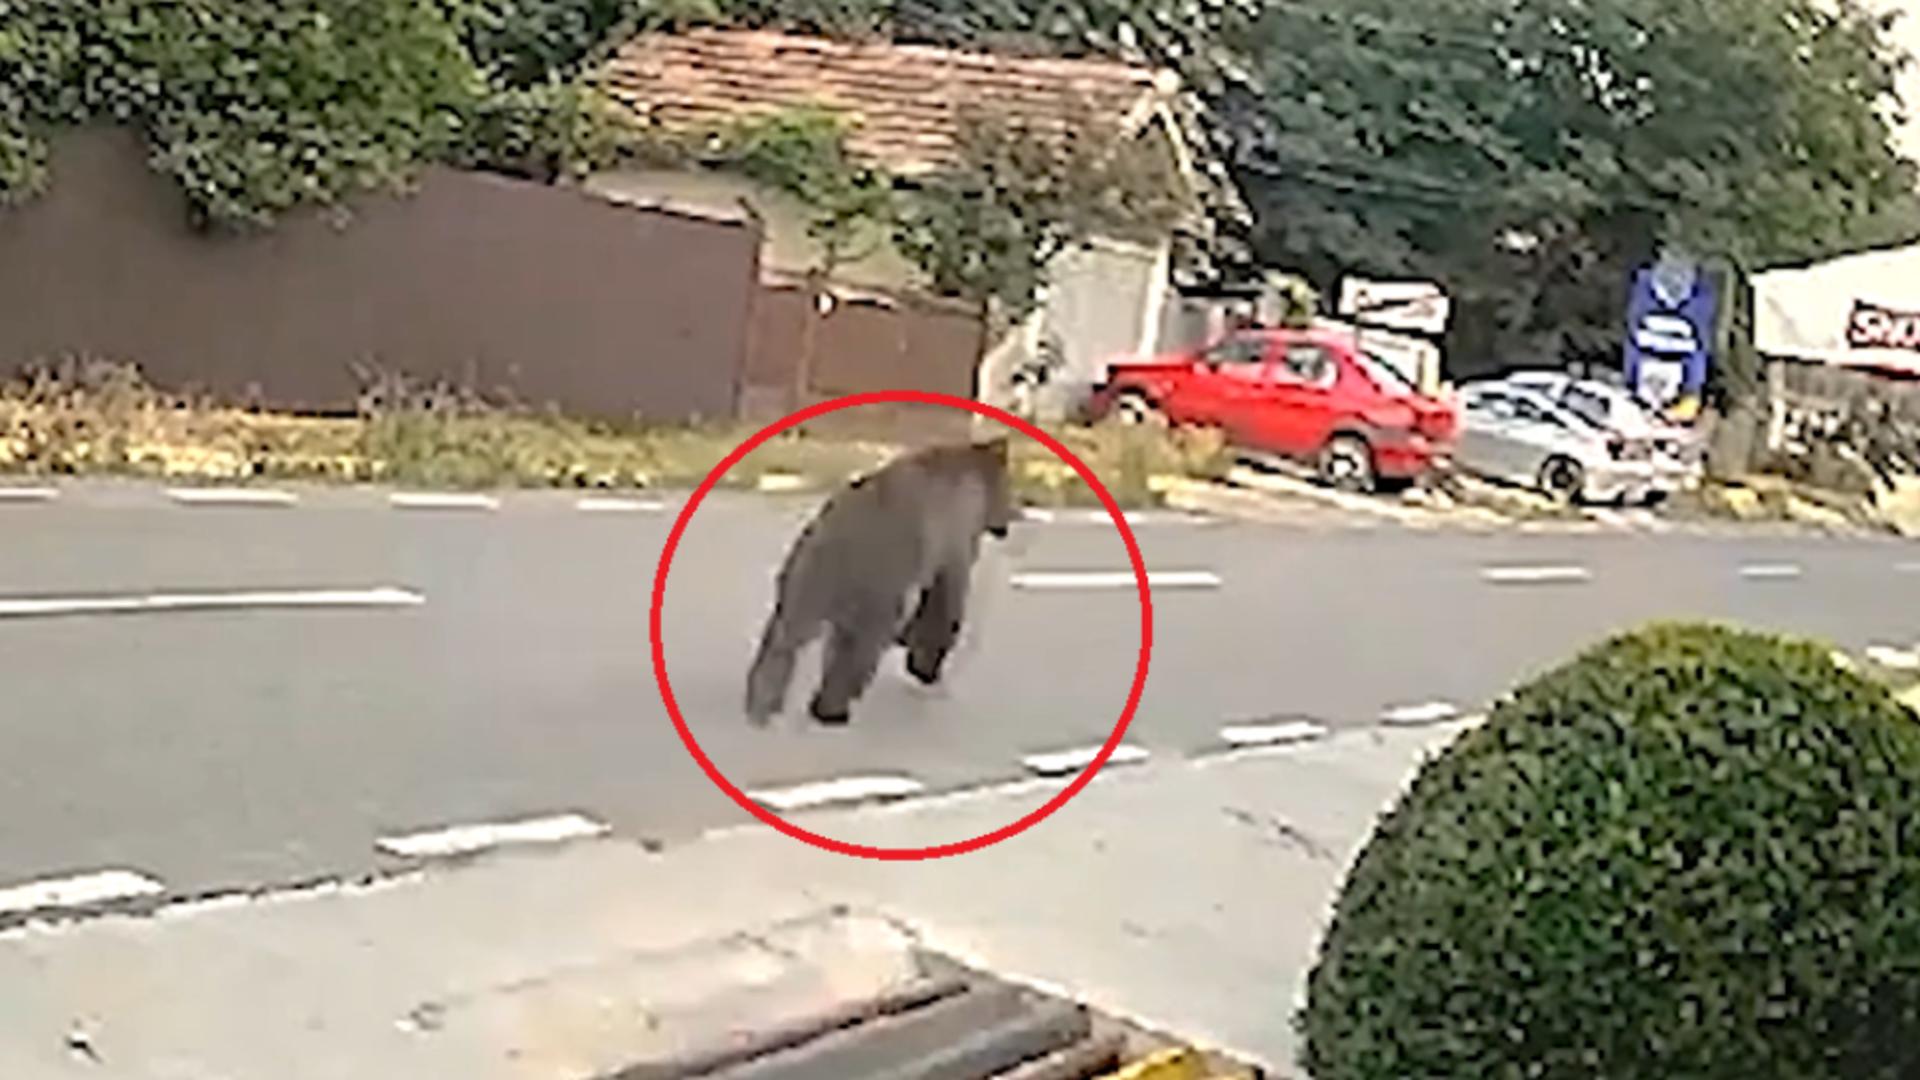 RO-Alert într-o localitate din Buzău: un urs a fost surprins plimbându-se nestingherit pe străzi, în plină zi. Imagini halucinante